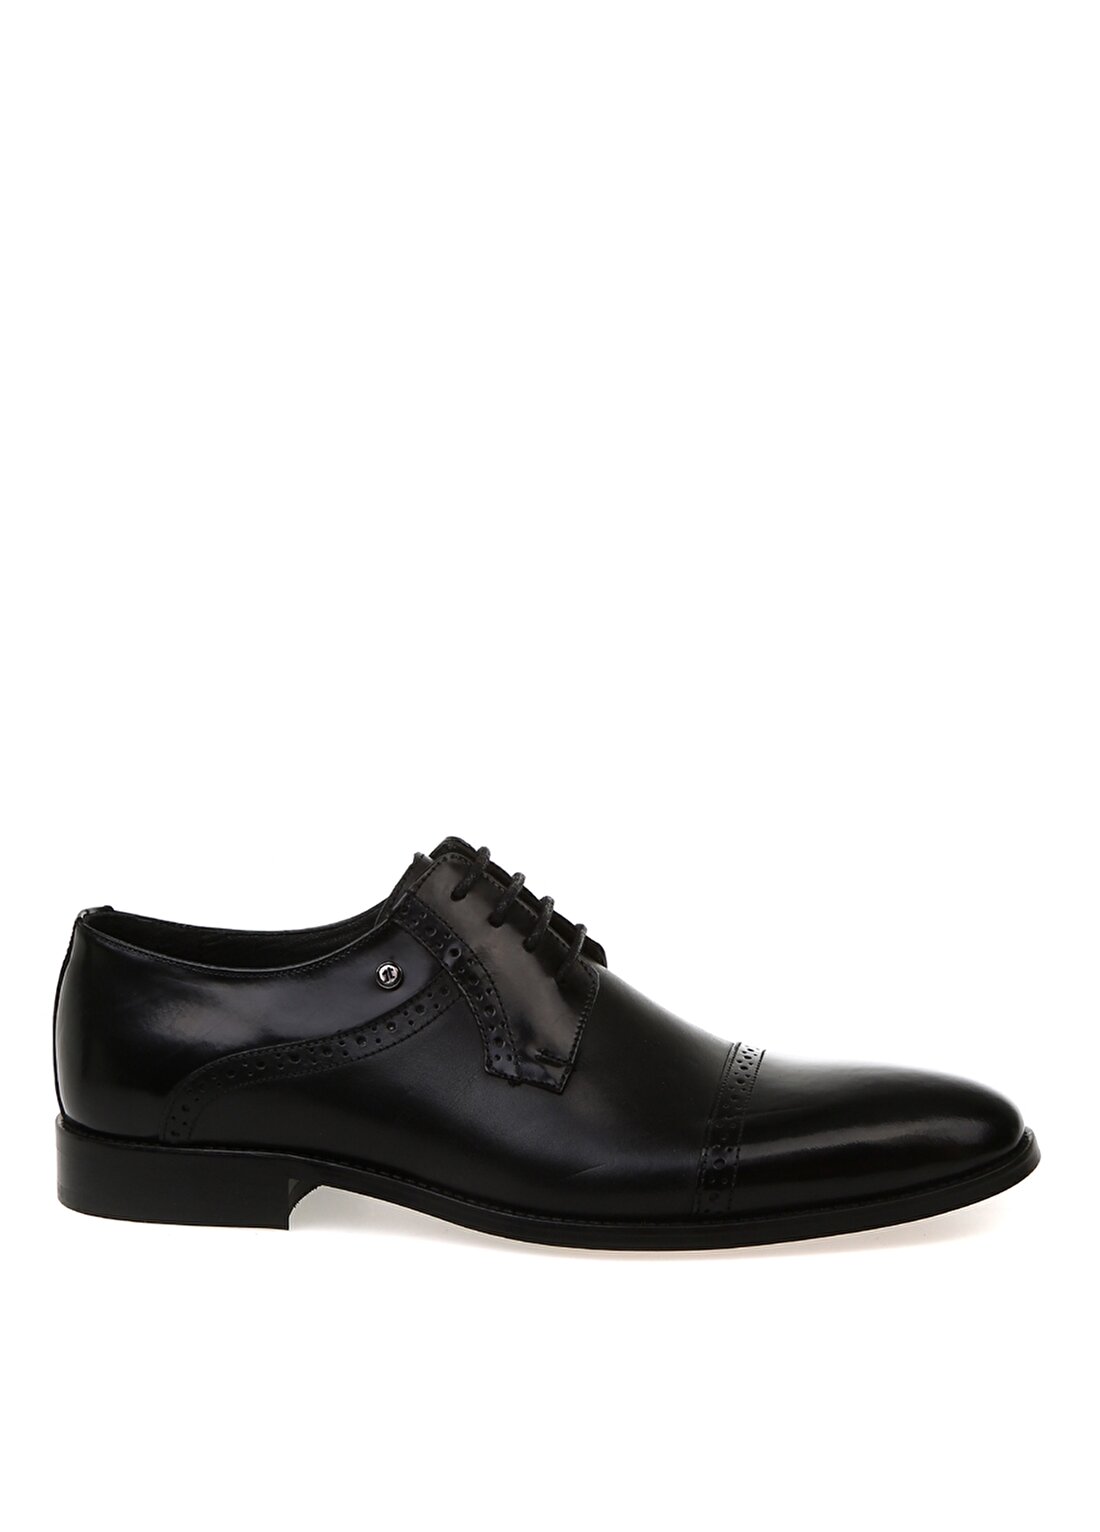 Kemal Tanca Kısa Topuklu Bağcıklı Sivri Uçlu Desenli Siyah Erkek Klasik Ayakkabı